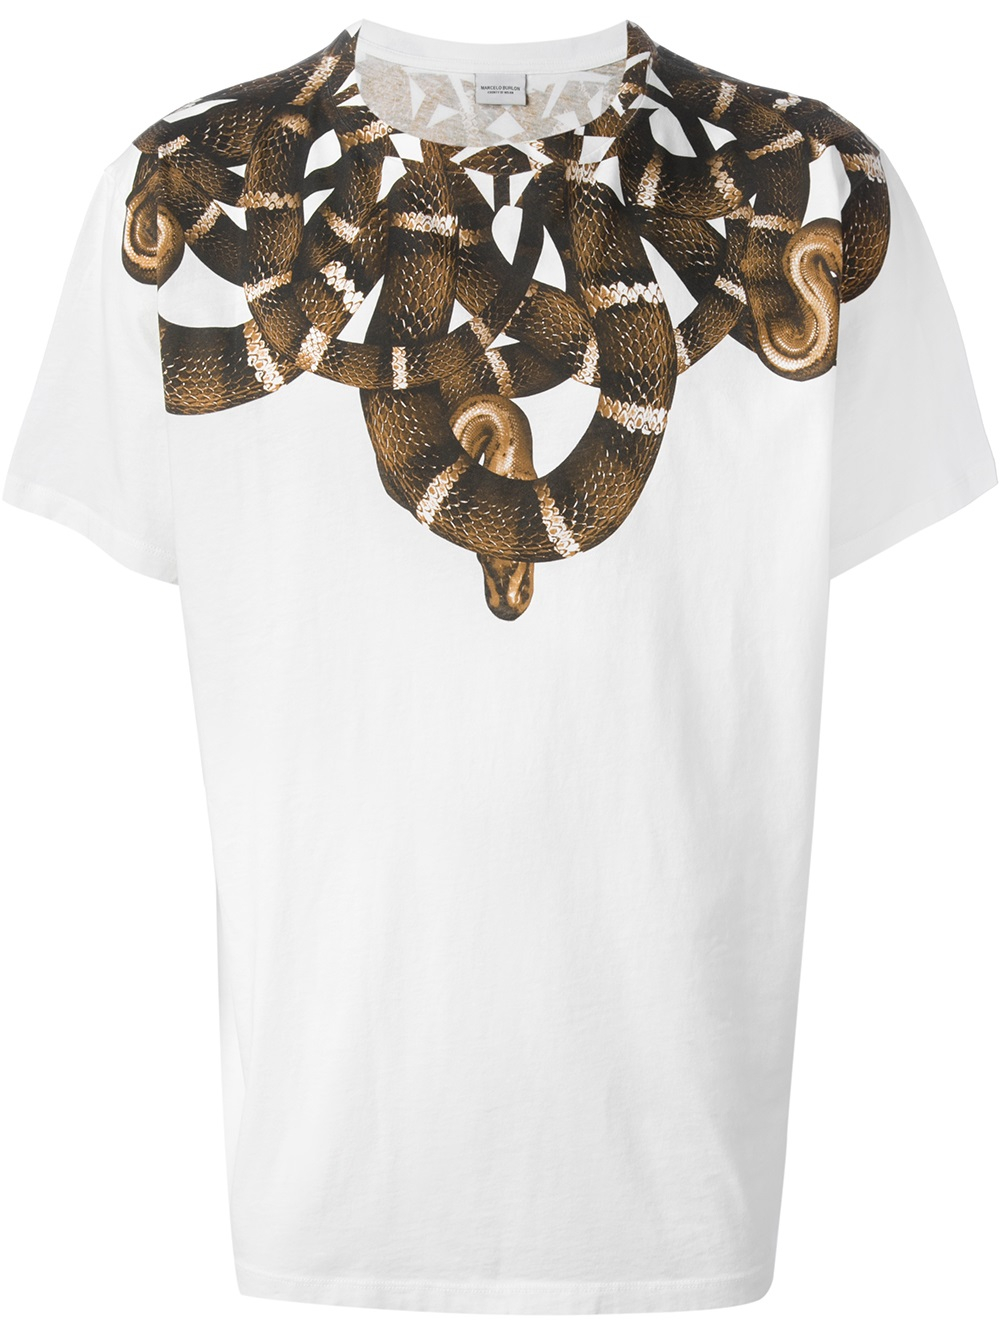 anspore aborre Exert Marcelo Burlon Snake Print Tshirt in White for Men - Lyst